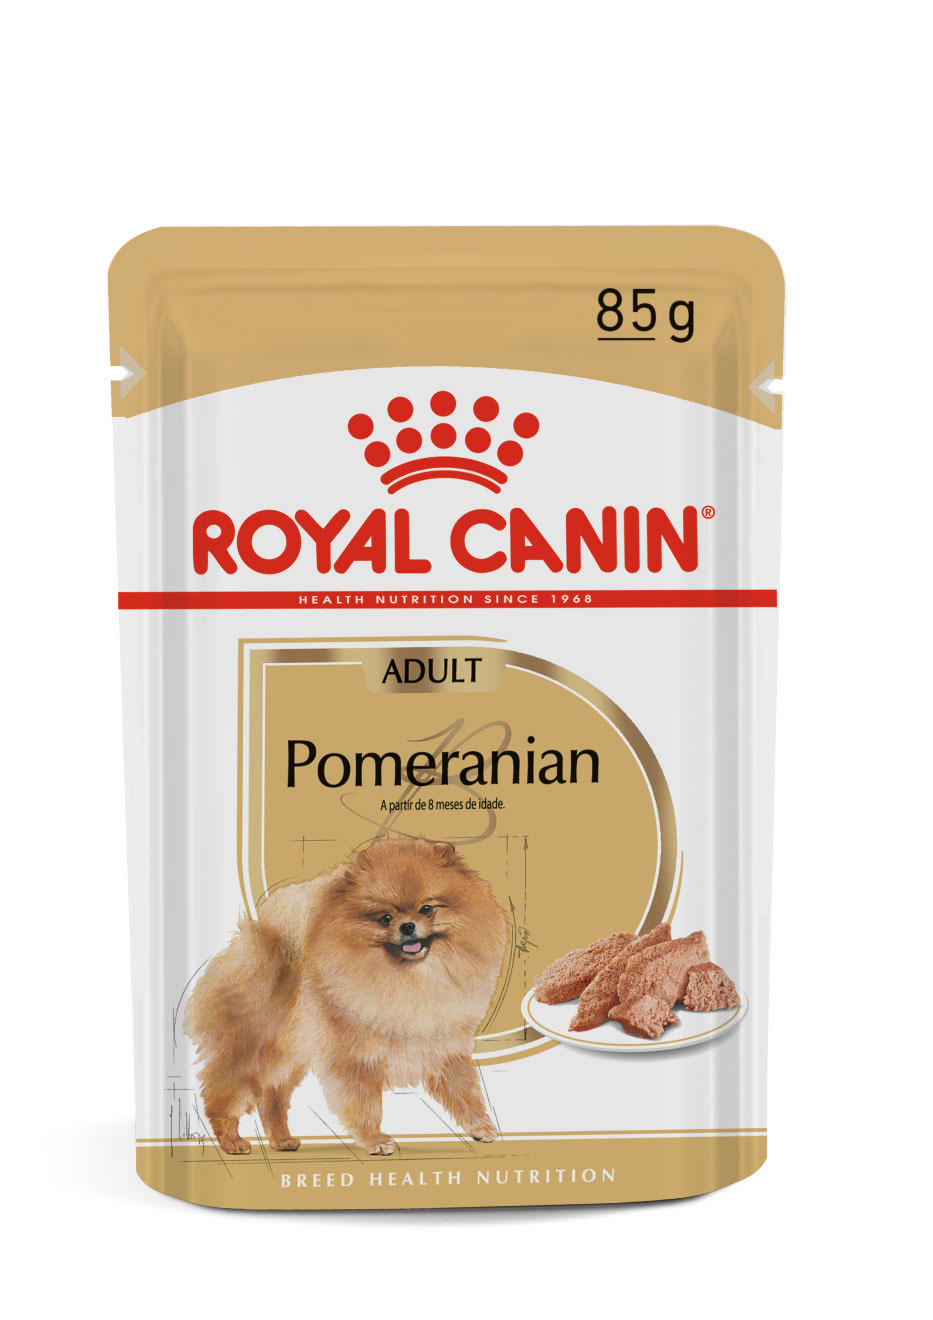 ROYAL CANIN POMERANIAN LOAF 85G